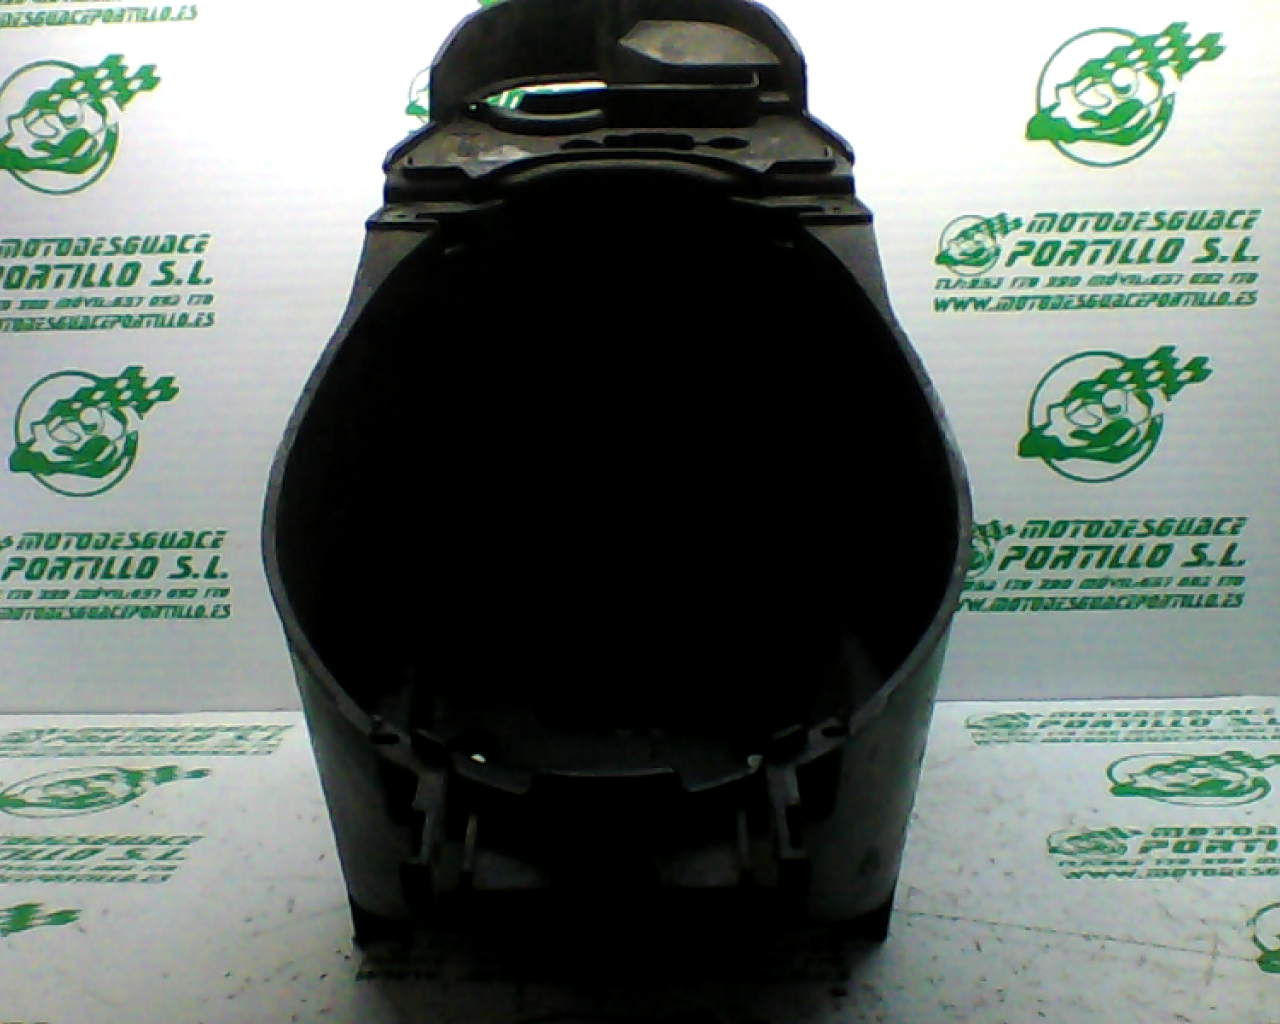 Porta-casco Yamaha axis cosmos  50 (1998-2000)